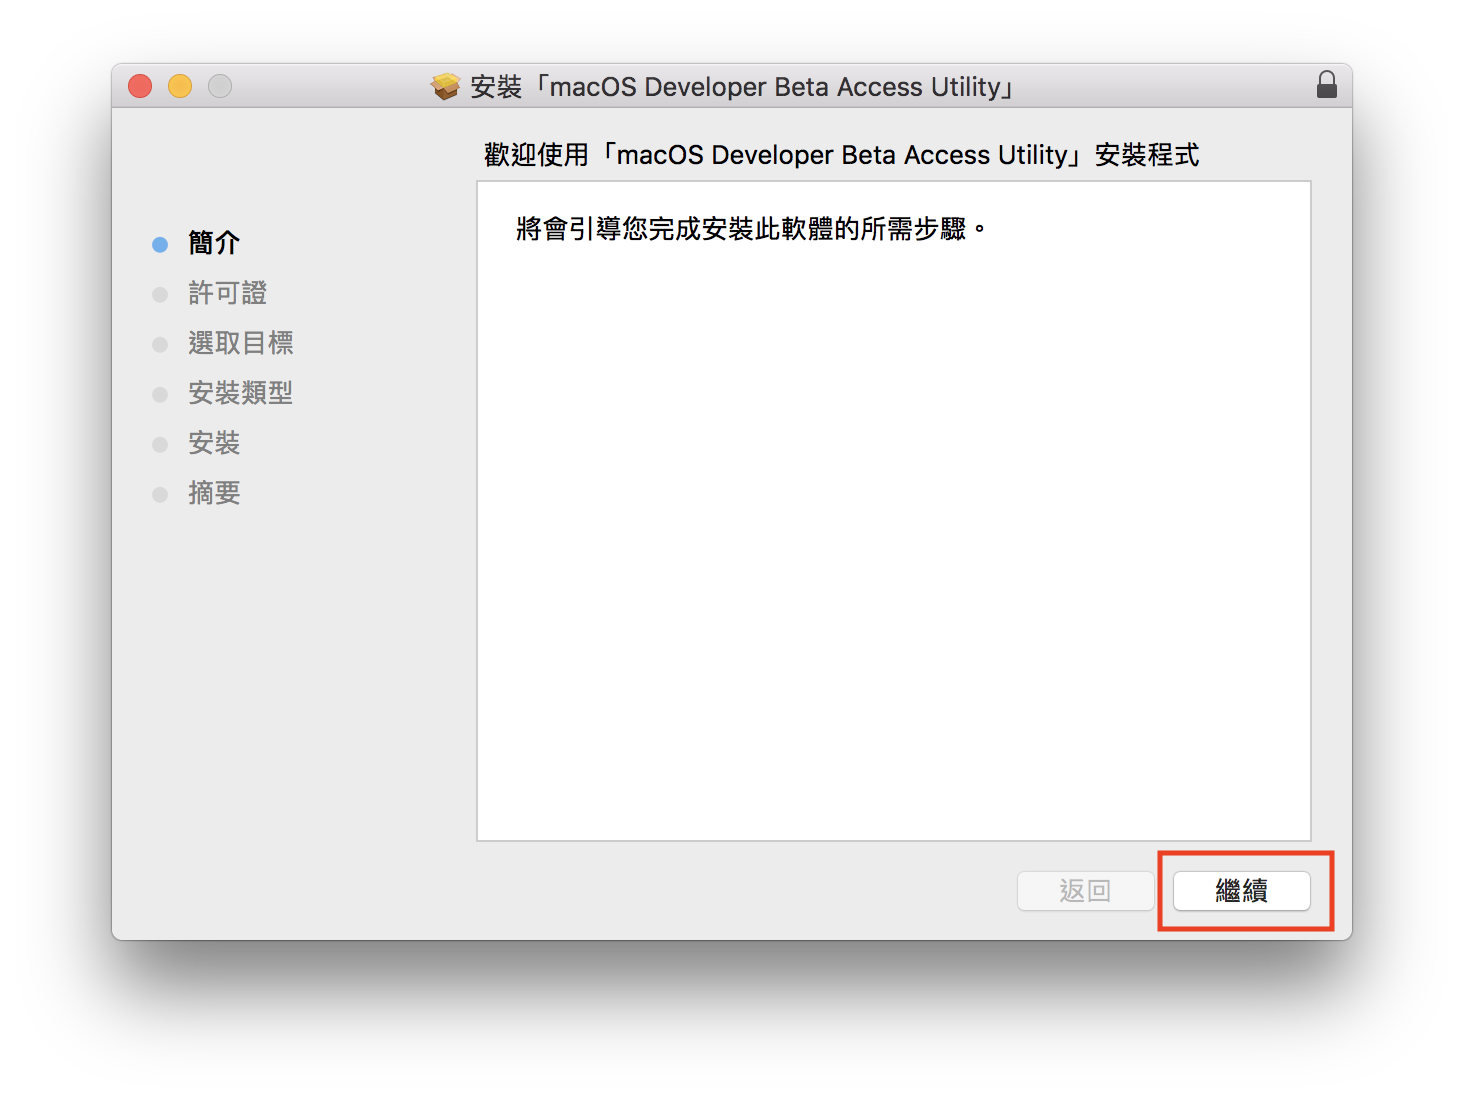 macOS 10.14 Beta 搶先升級 免開發者帳號升級教學 3